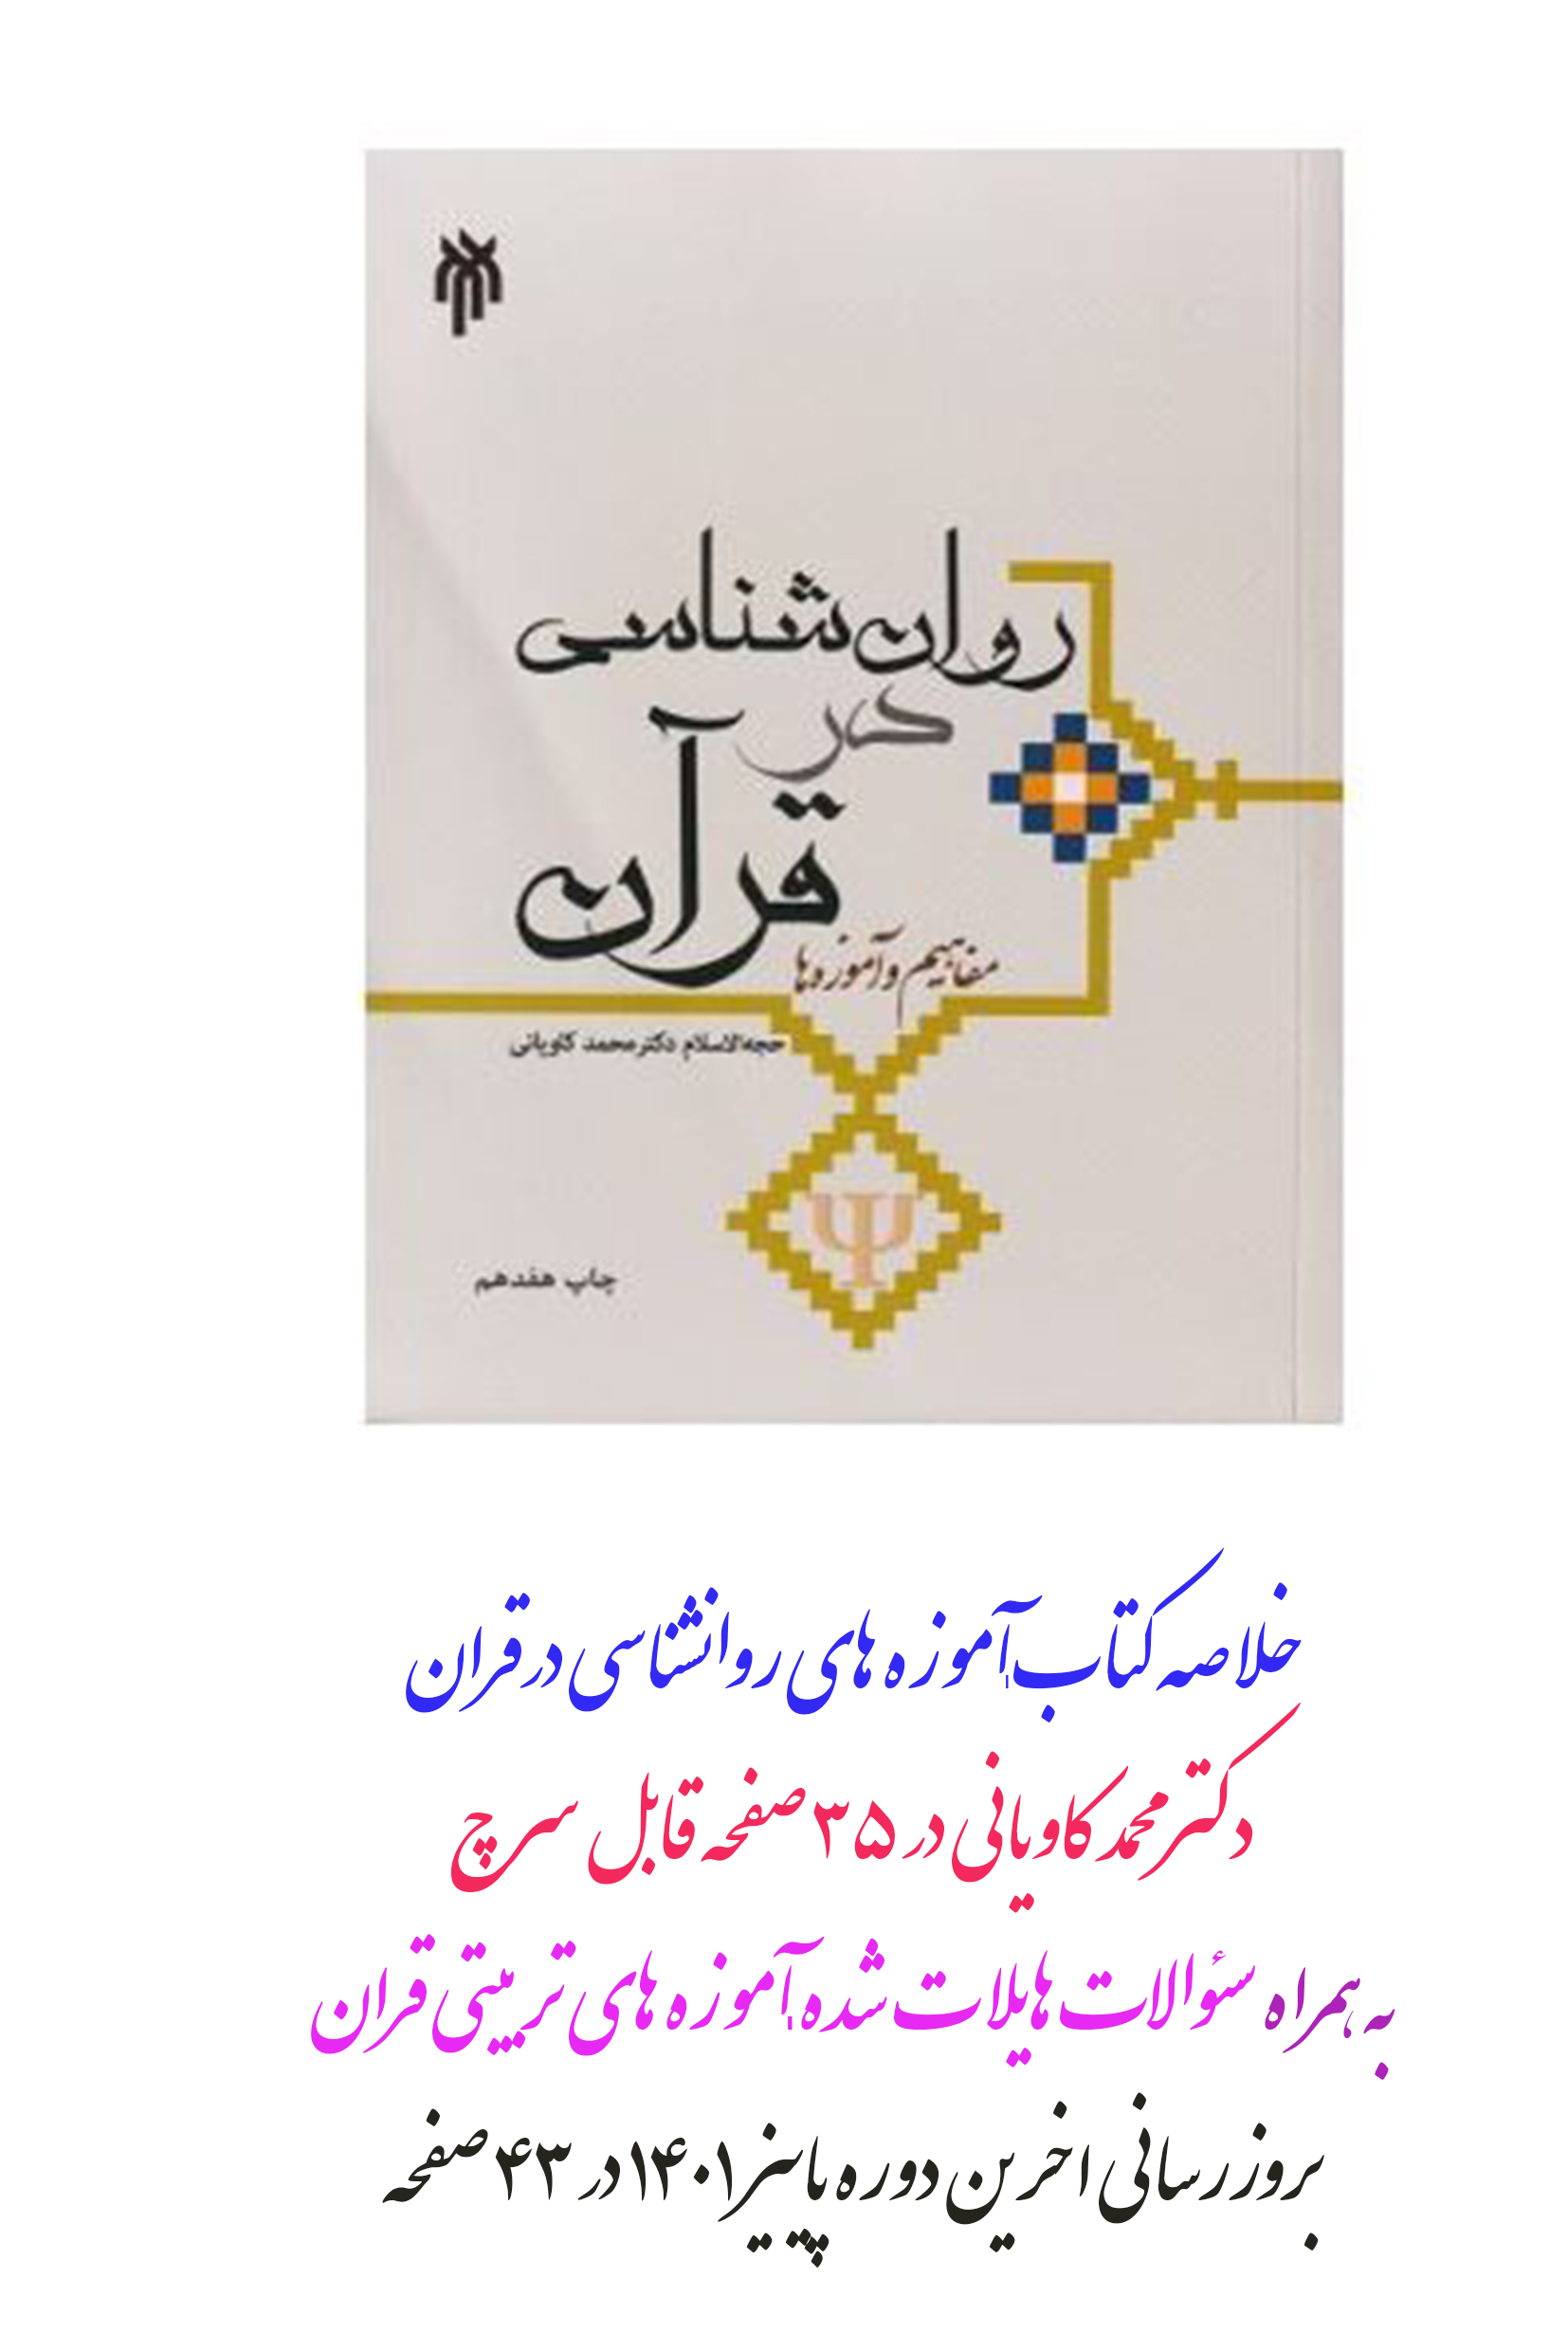 خلاصه کتاب + نمونه سئولات آموزه های روانشناسی در قرآن از محمد کاویانی در 35 صفحه قابل سرچ